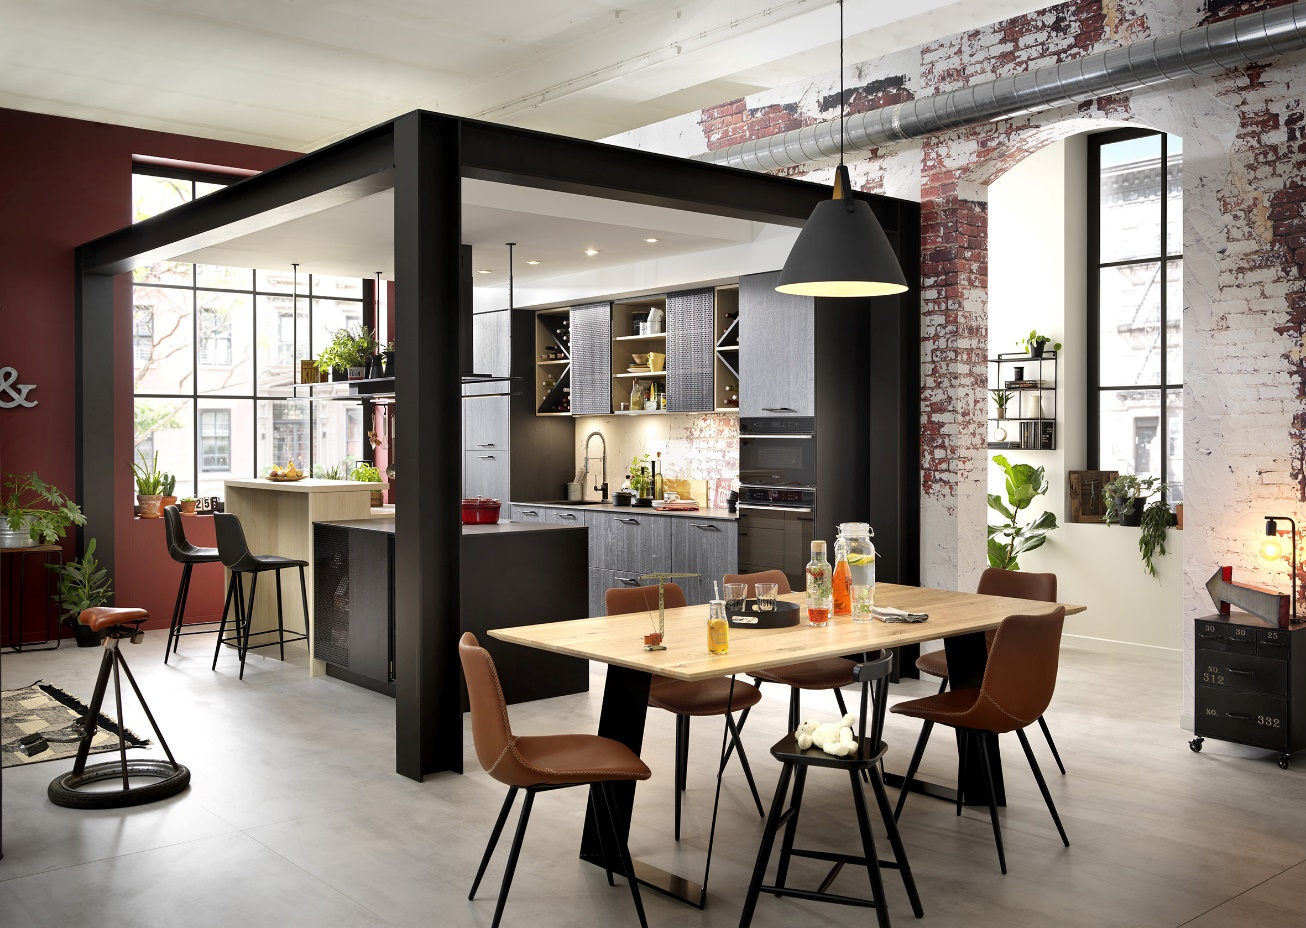 Schmidt abrirá al menos seis nuevas tiendas de cocinas y muebles de hogar en 2022